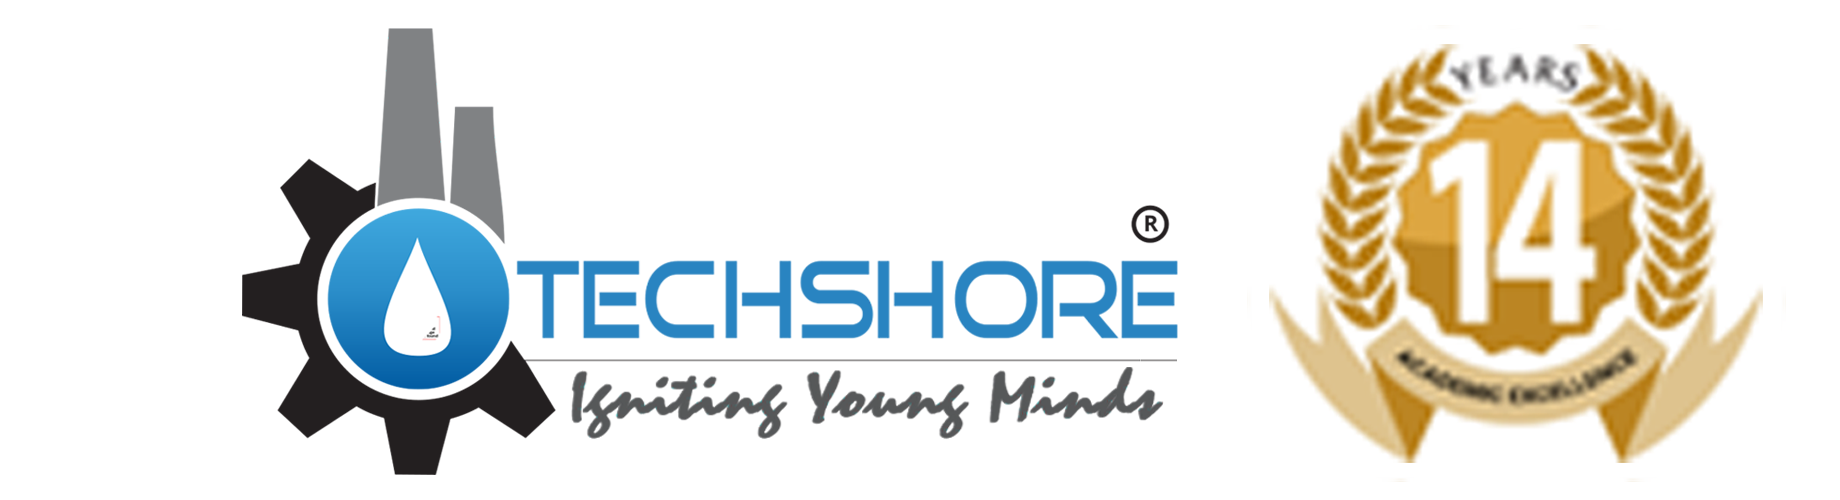 Techshore inspection service logo